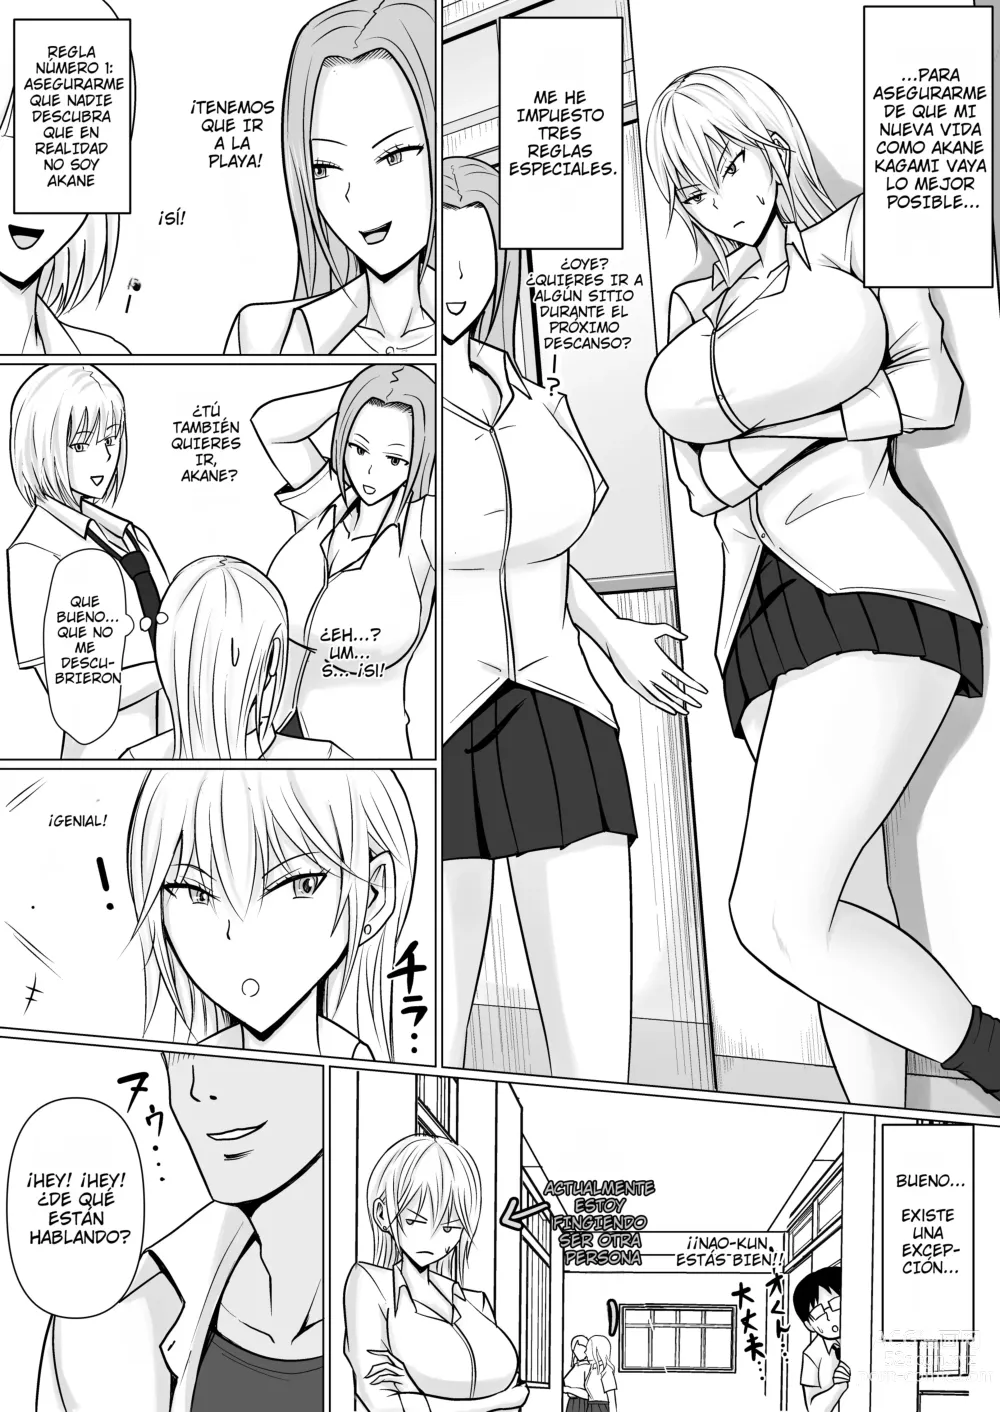 Page 30 of doujinshi Poseí a la Chica Rebelde de Clase